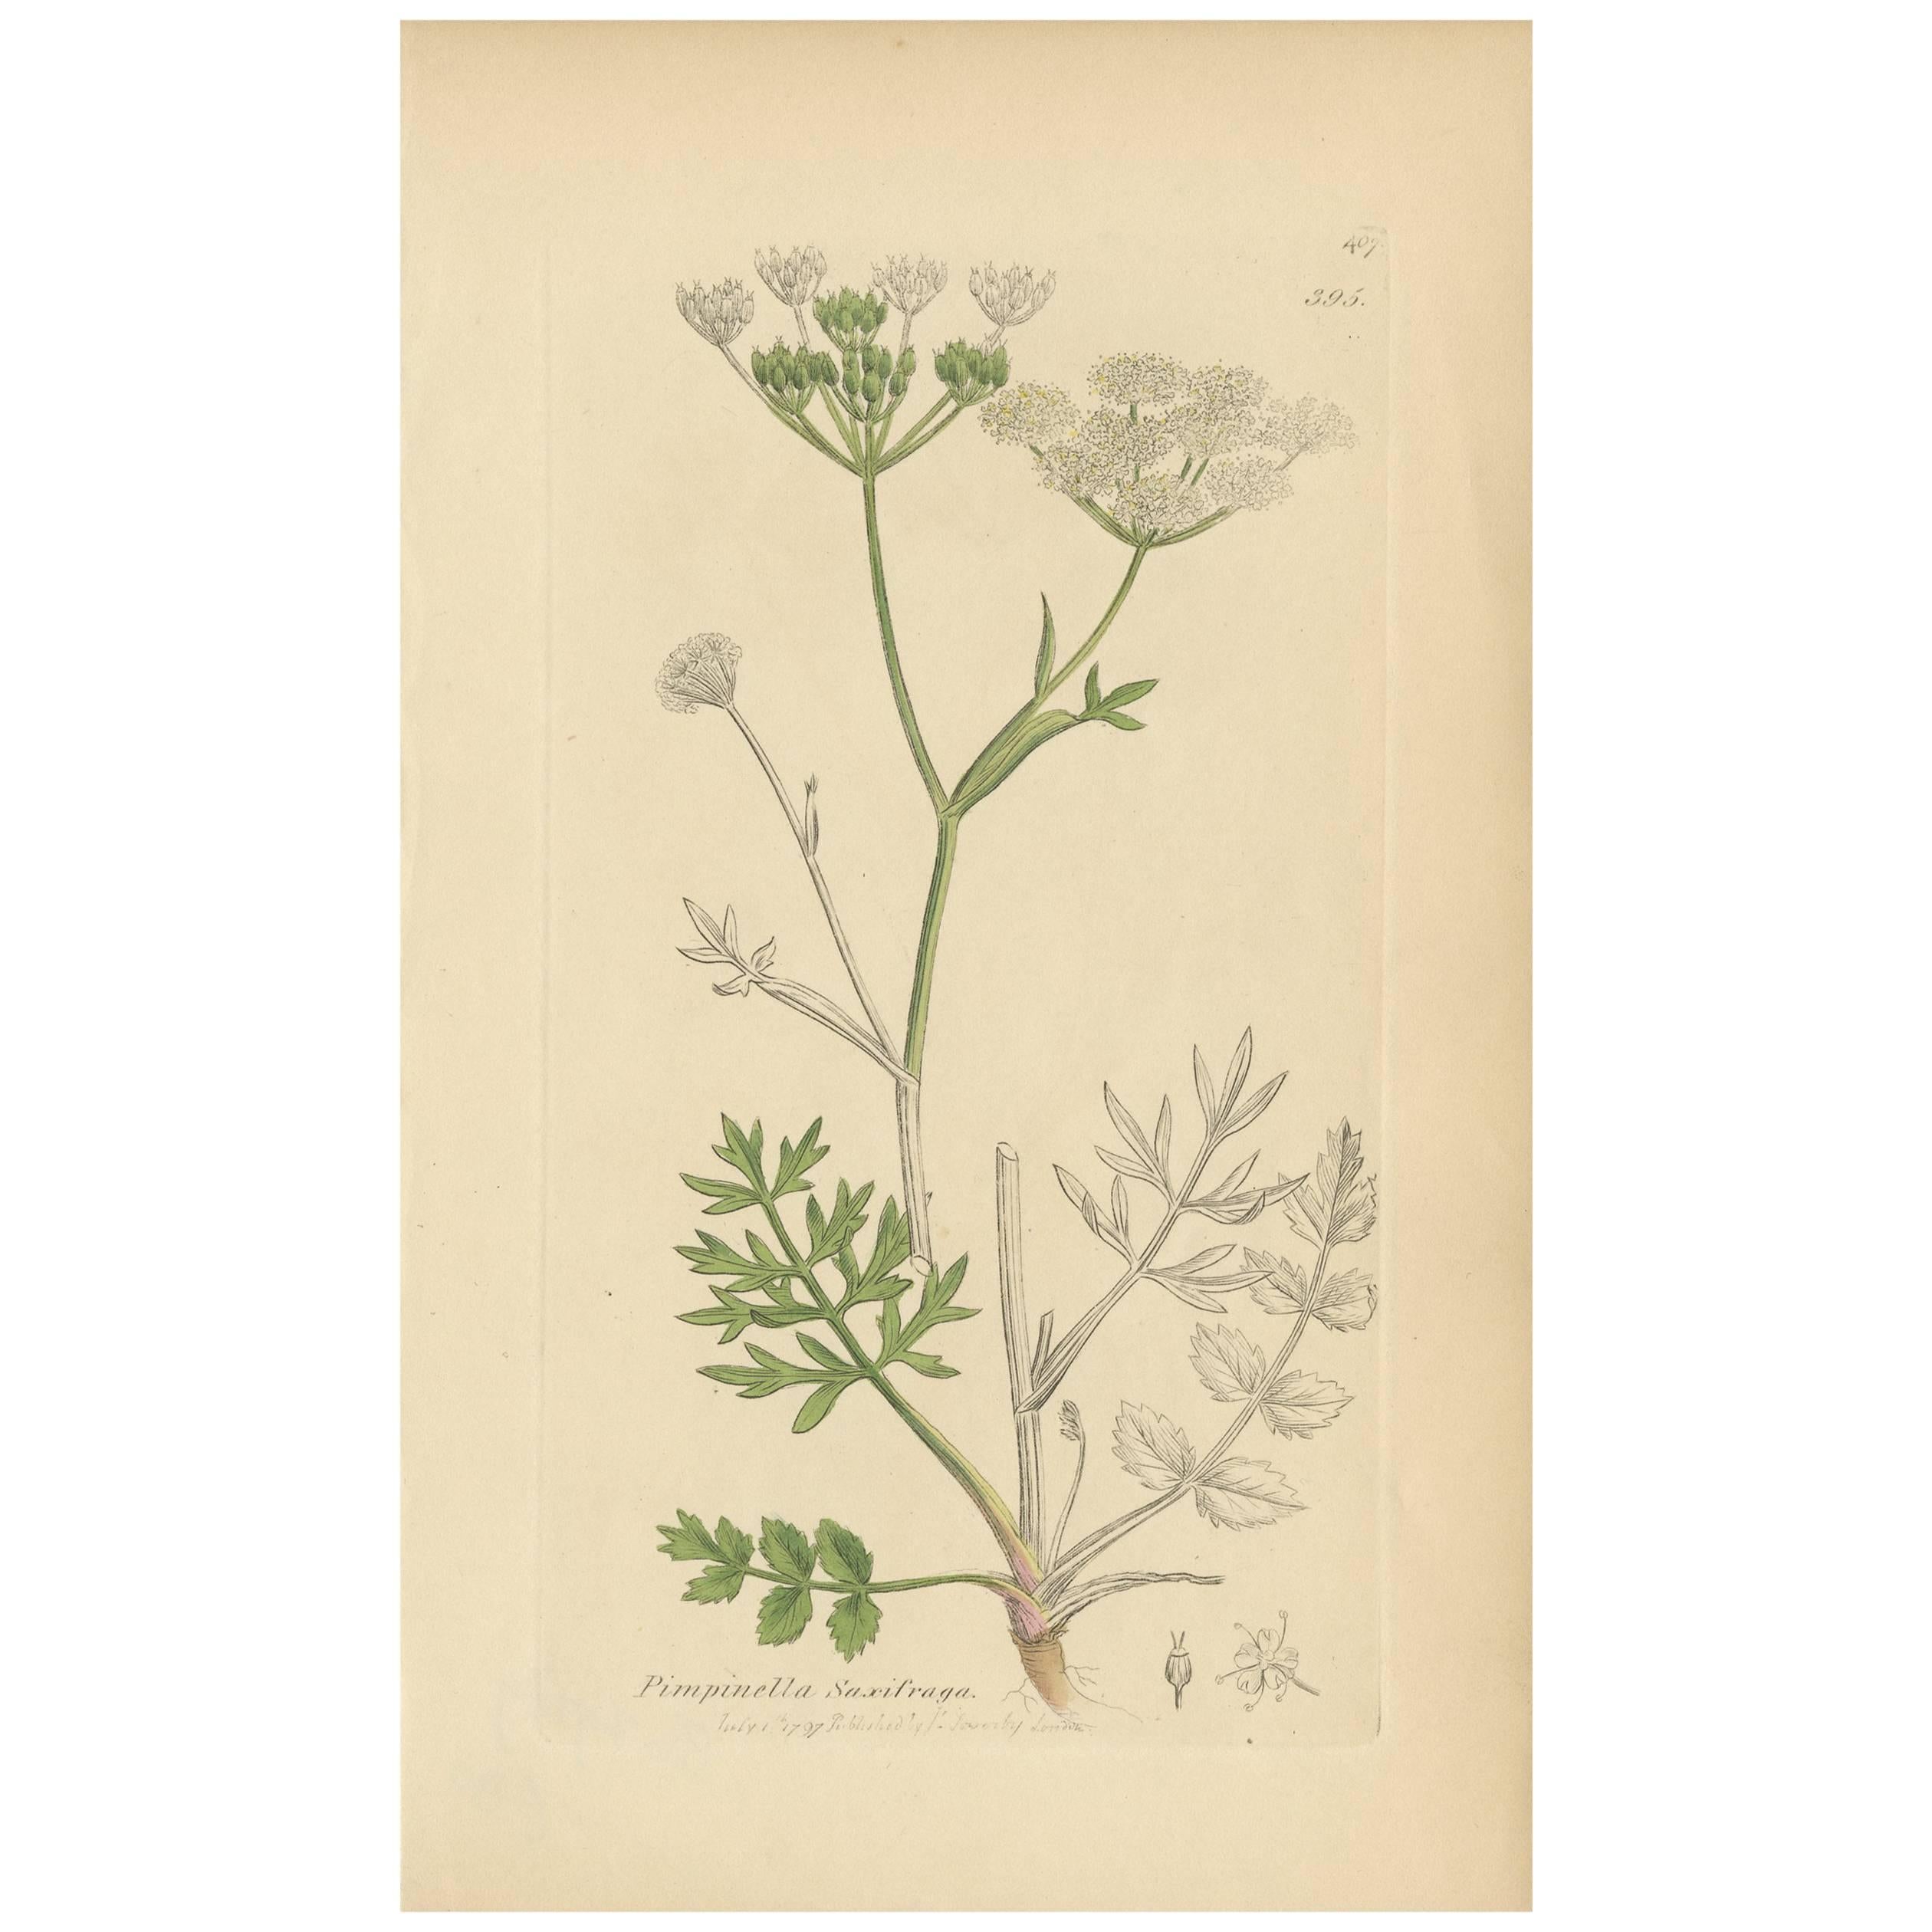 Antiker Botanikdruck „Pimpinella Saxifraga“ von J. Sowerby, 1797